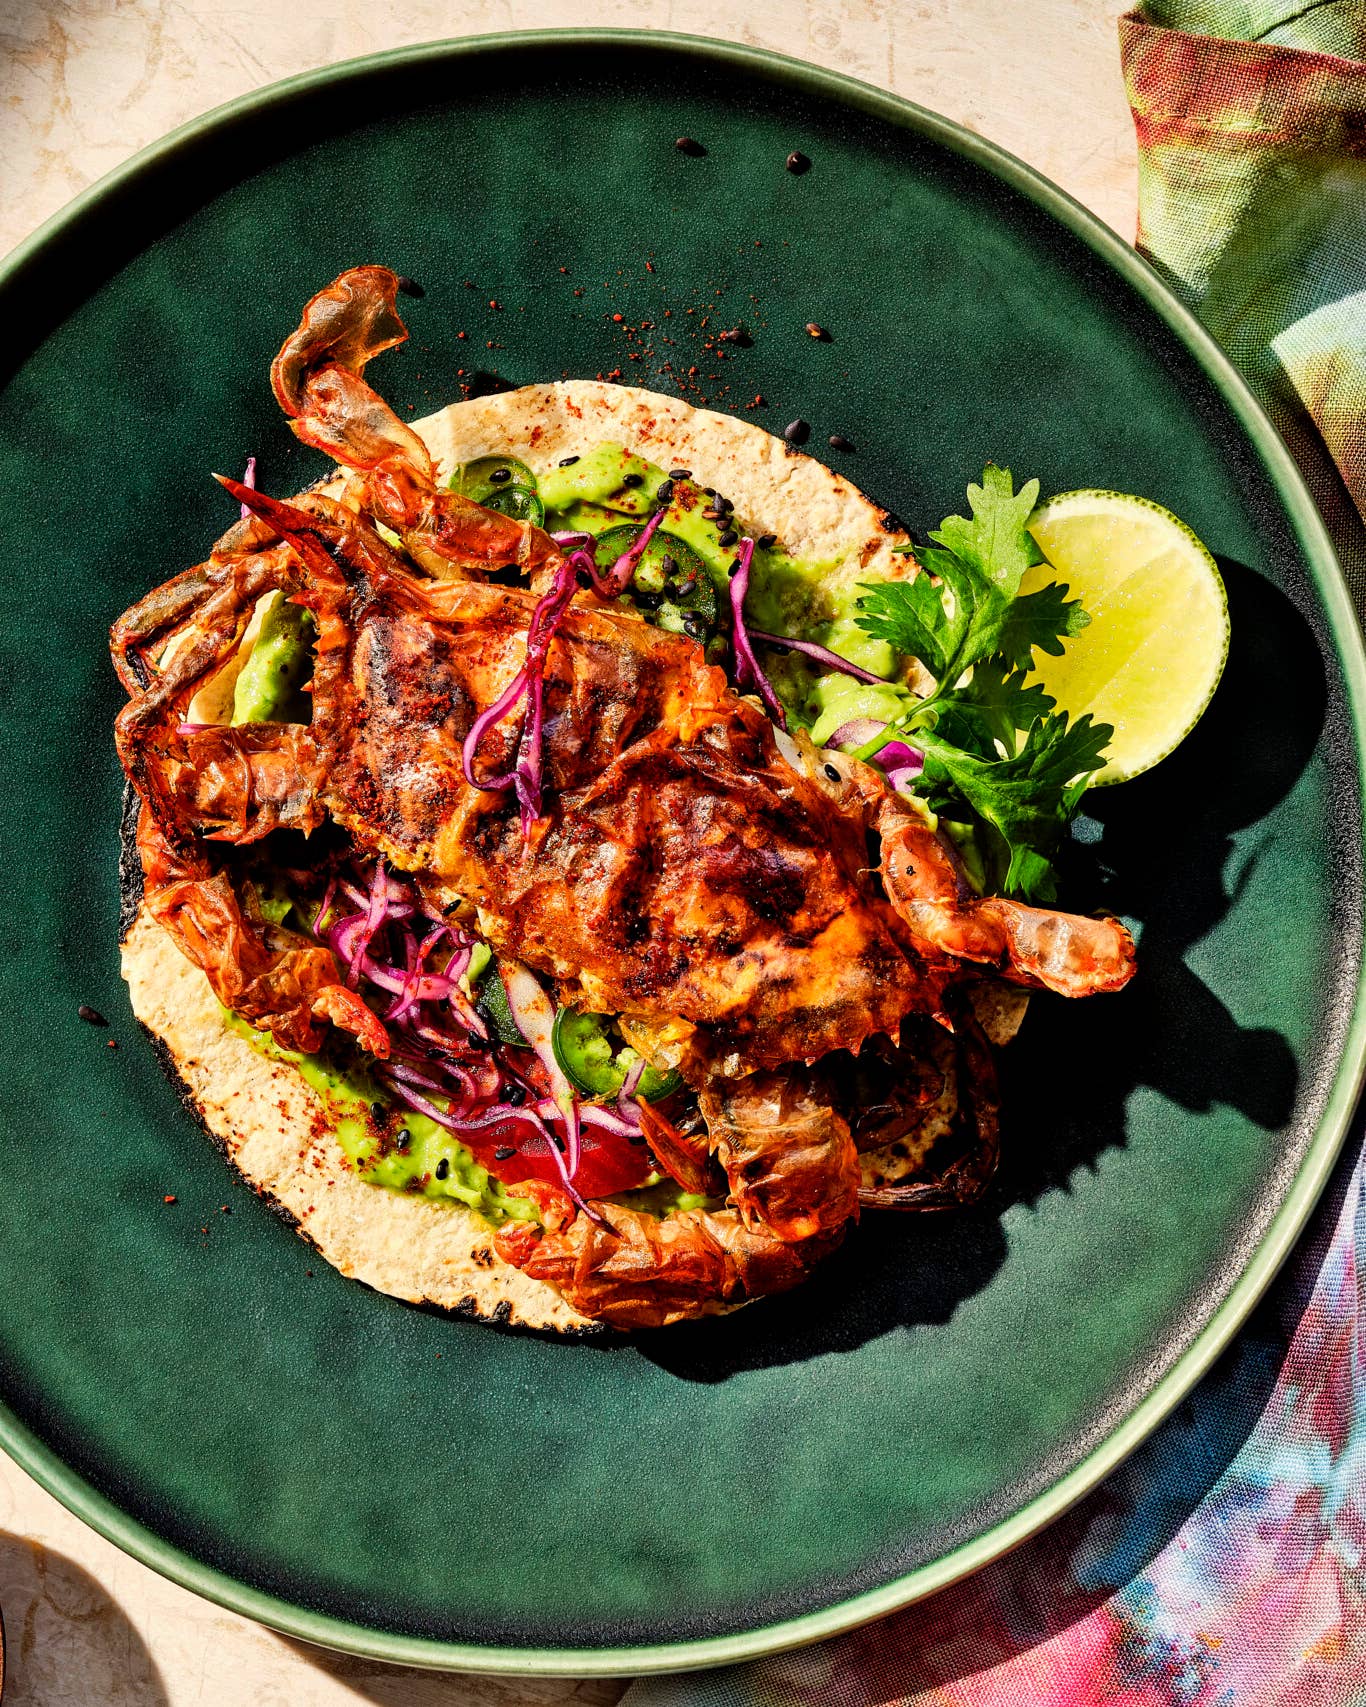 Best Baja Fish Taco Recipes